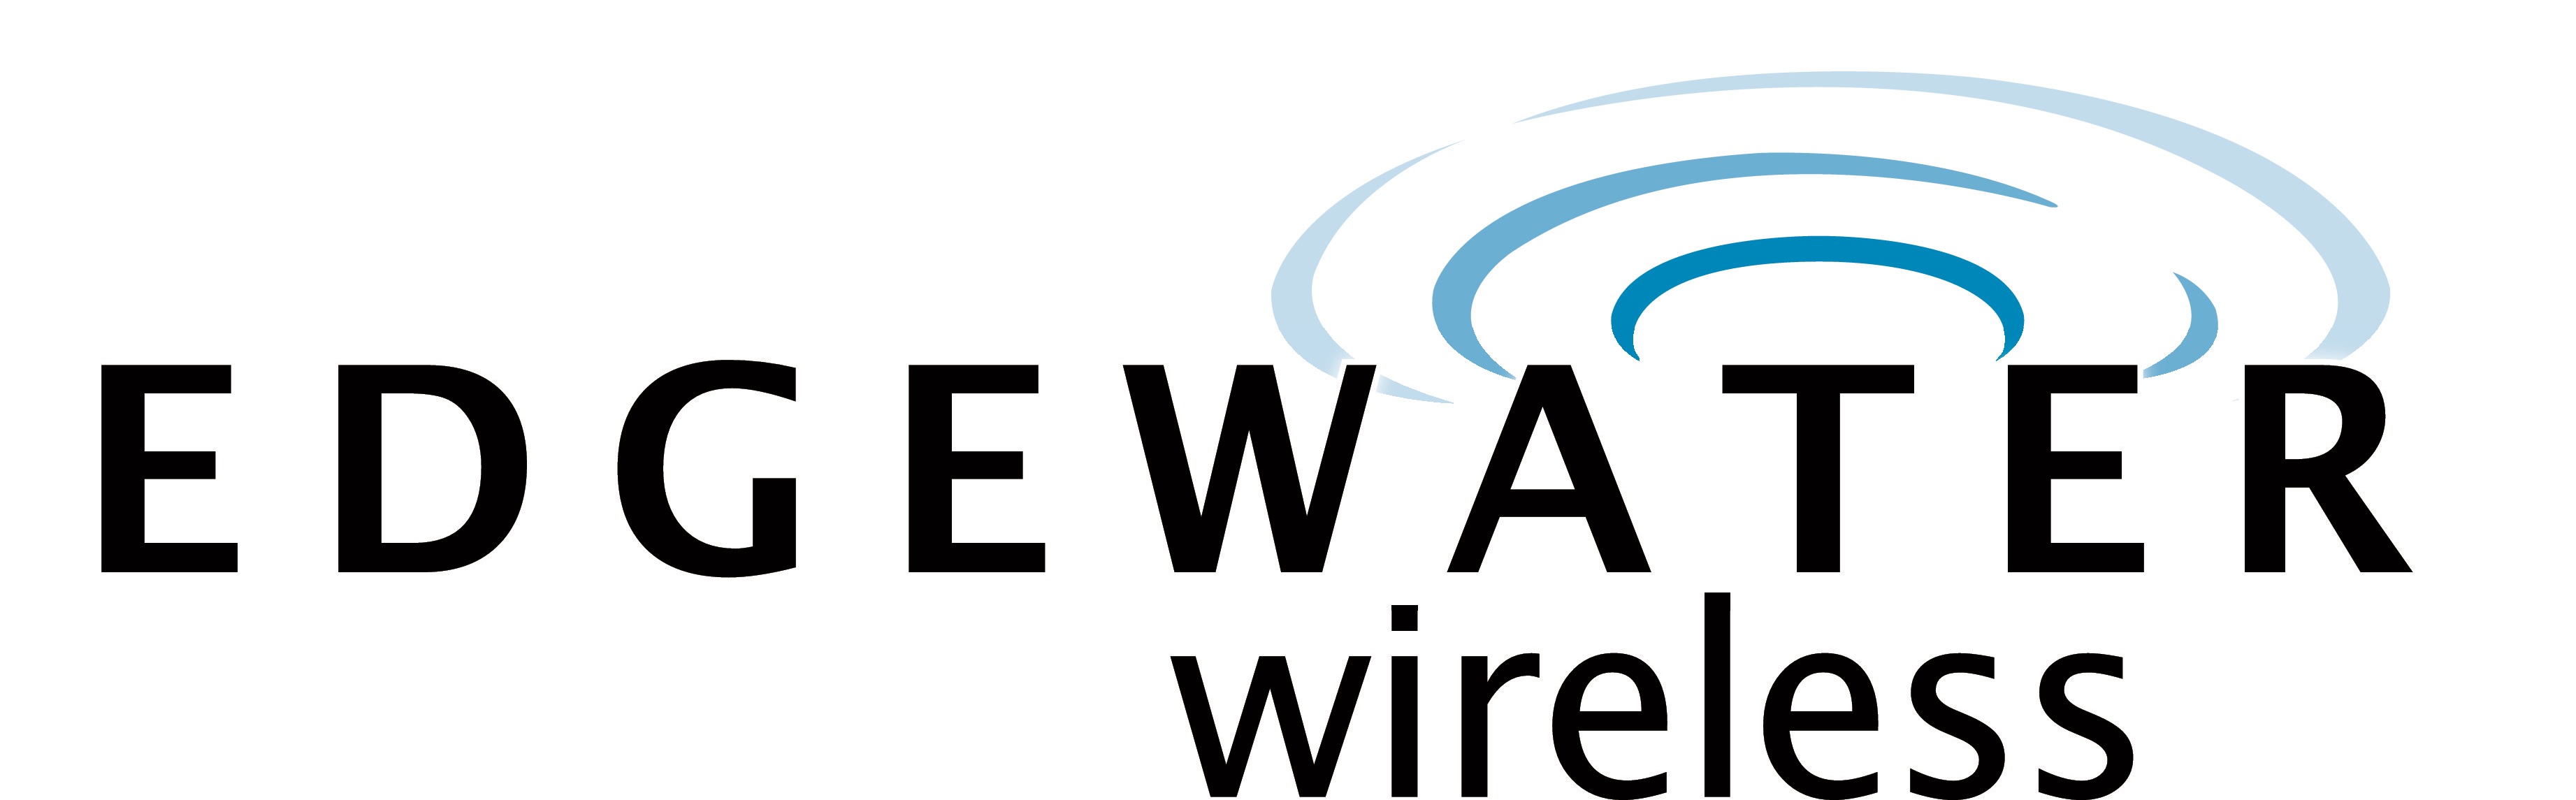 Edgewater Wireless